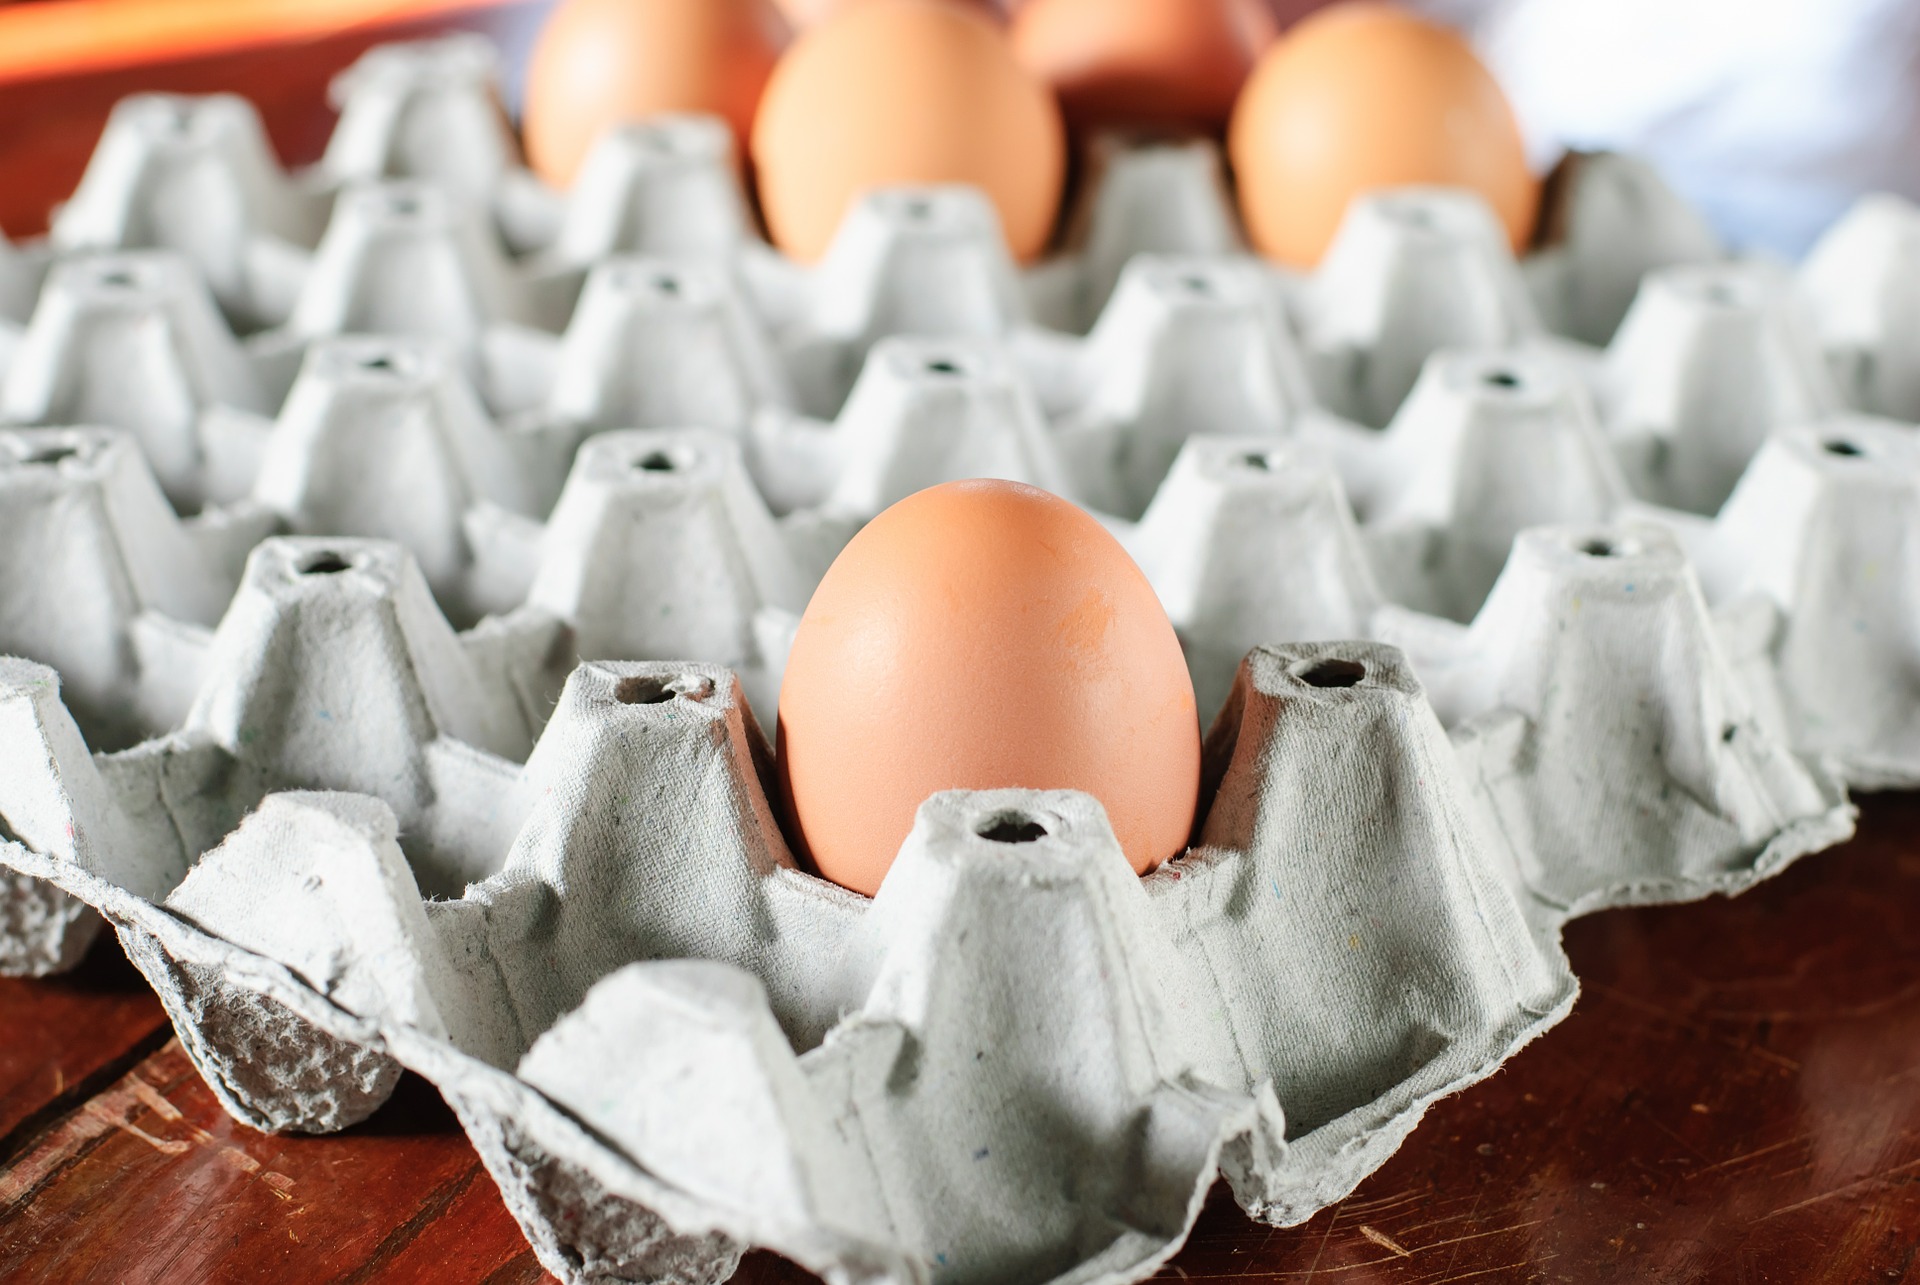 Proteinbedarf auch mit Eiern decken